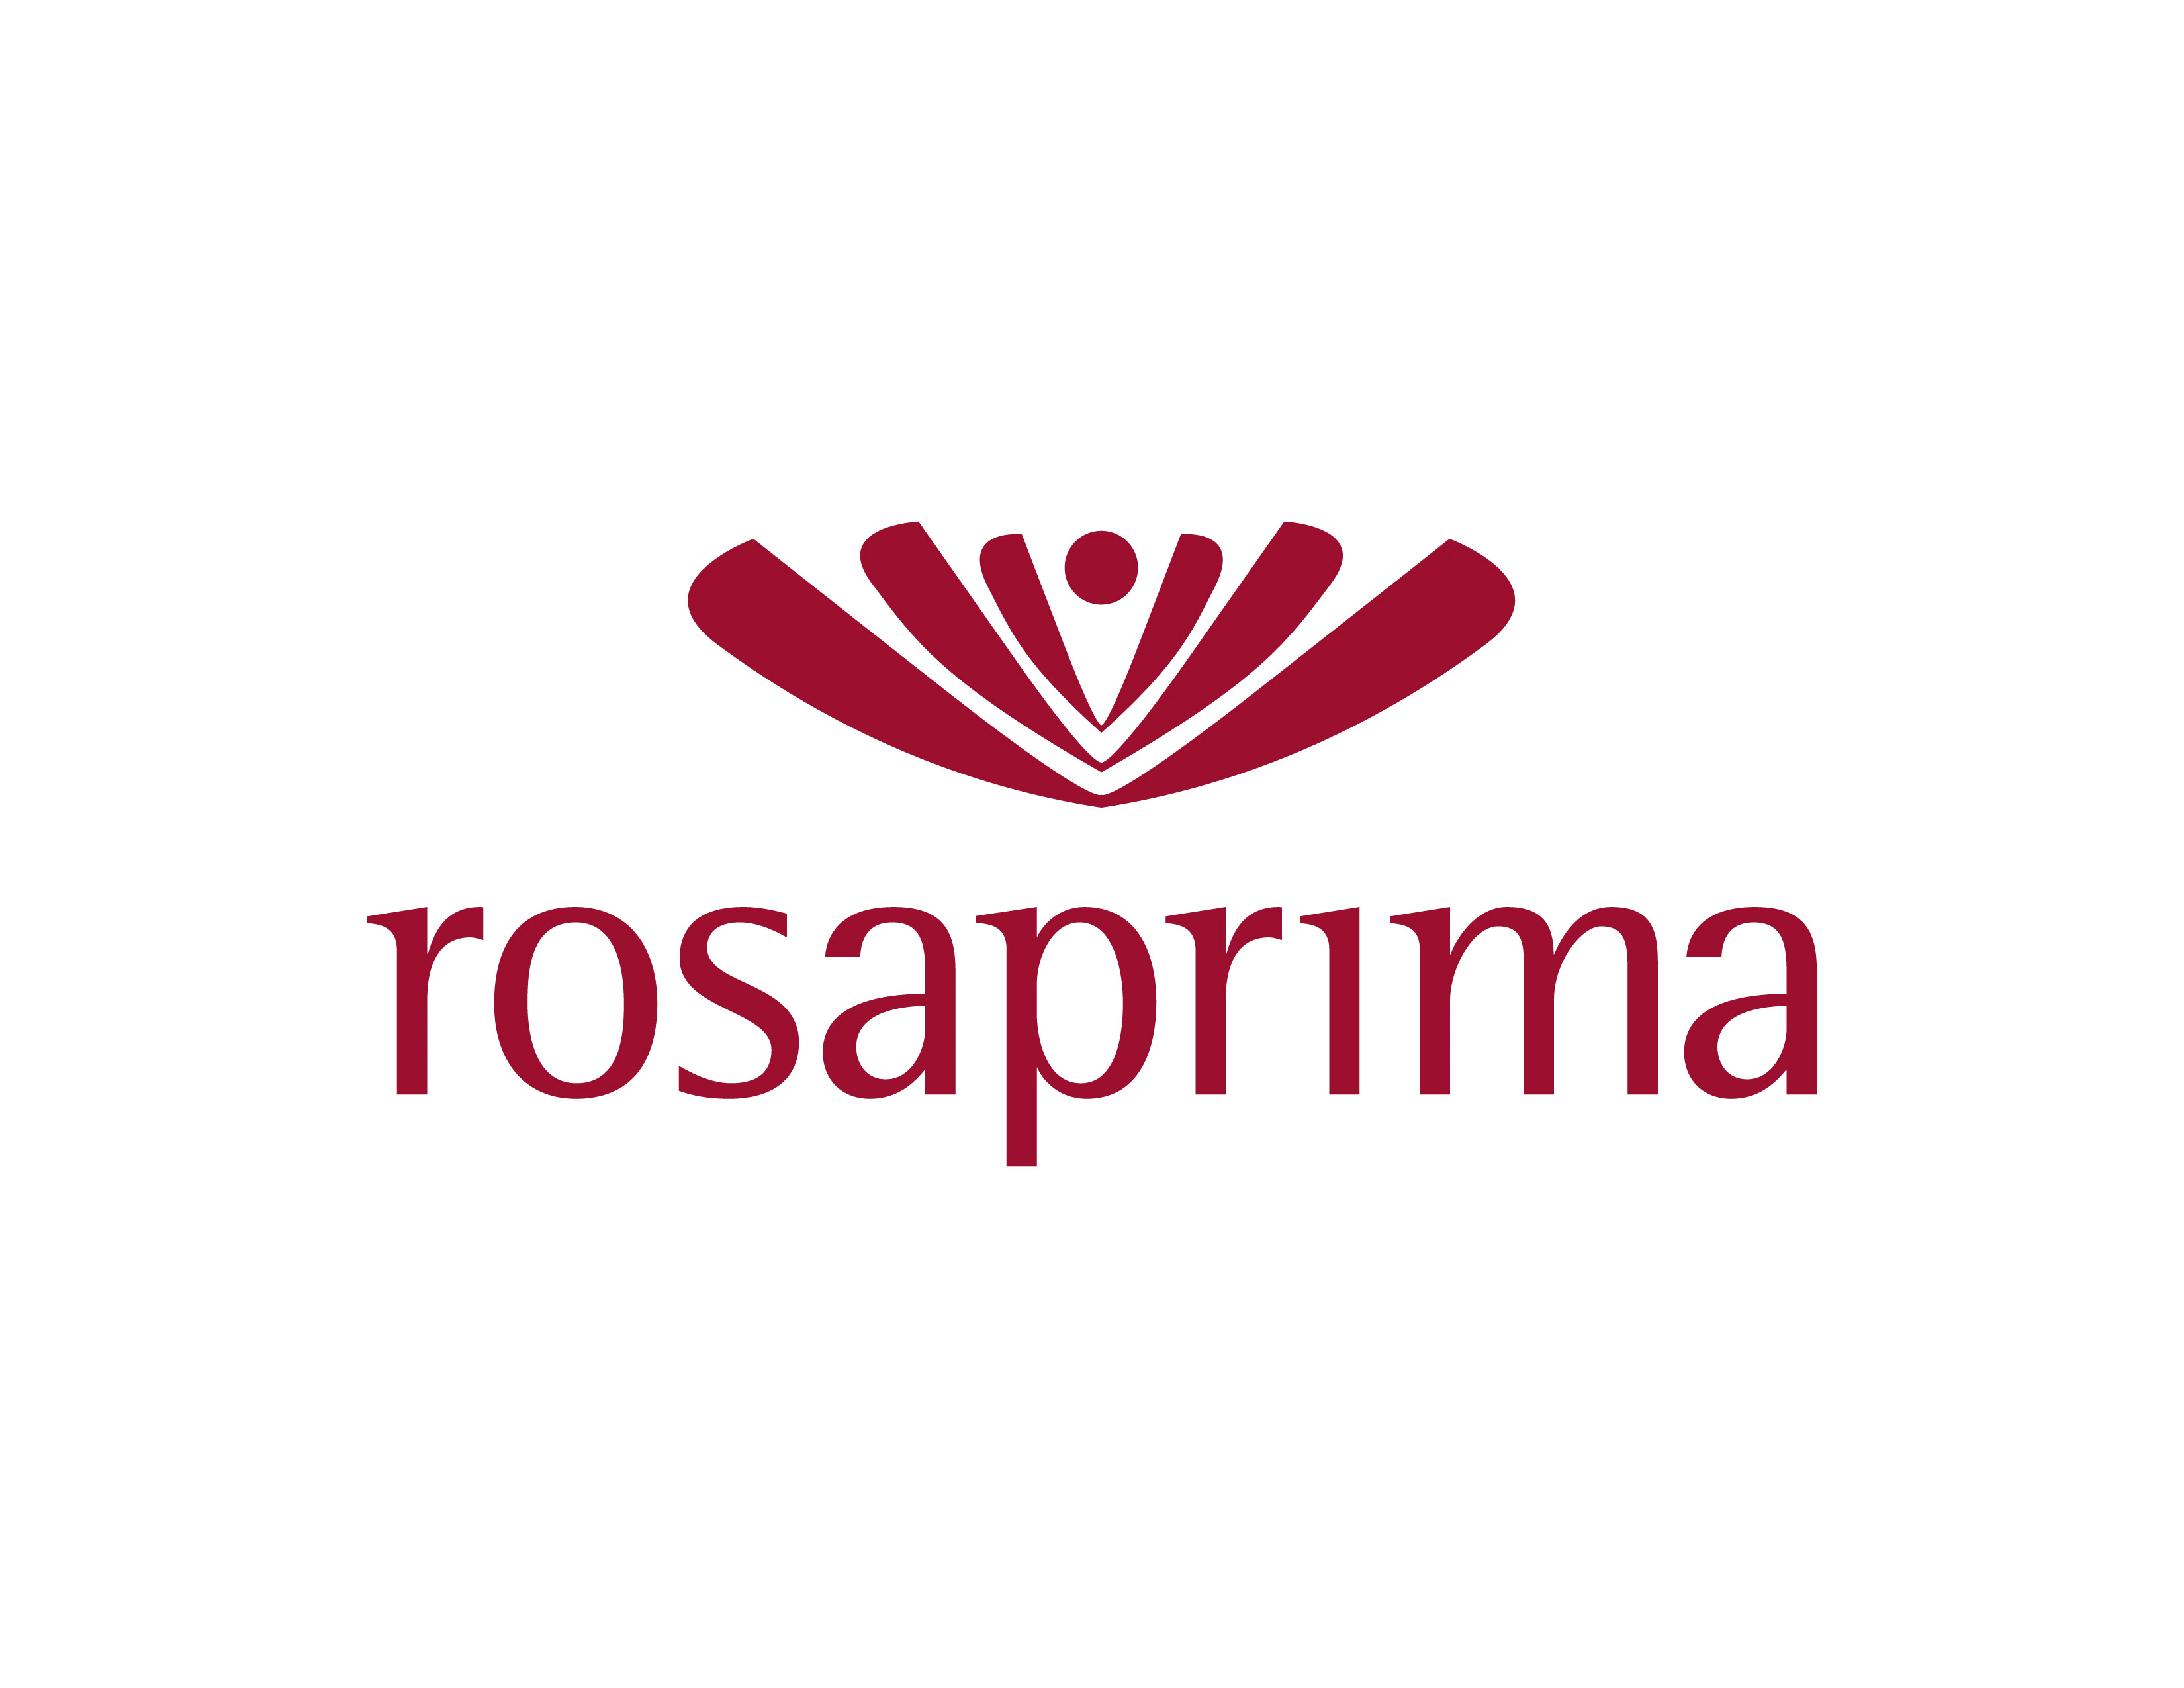 rosaprima factorial client